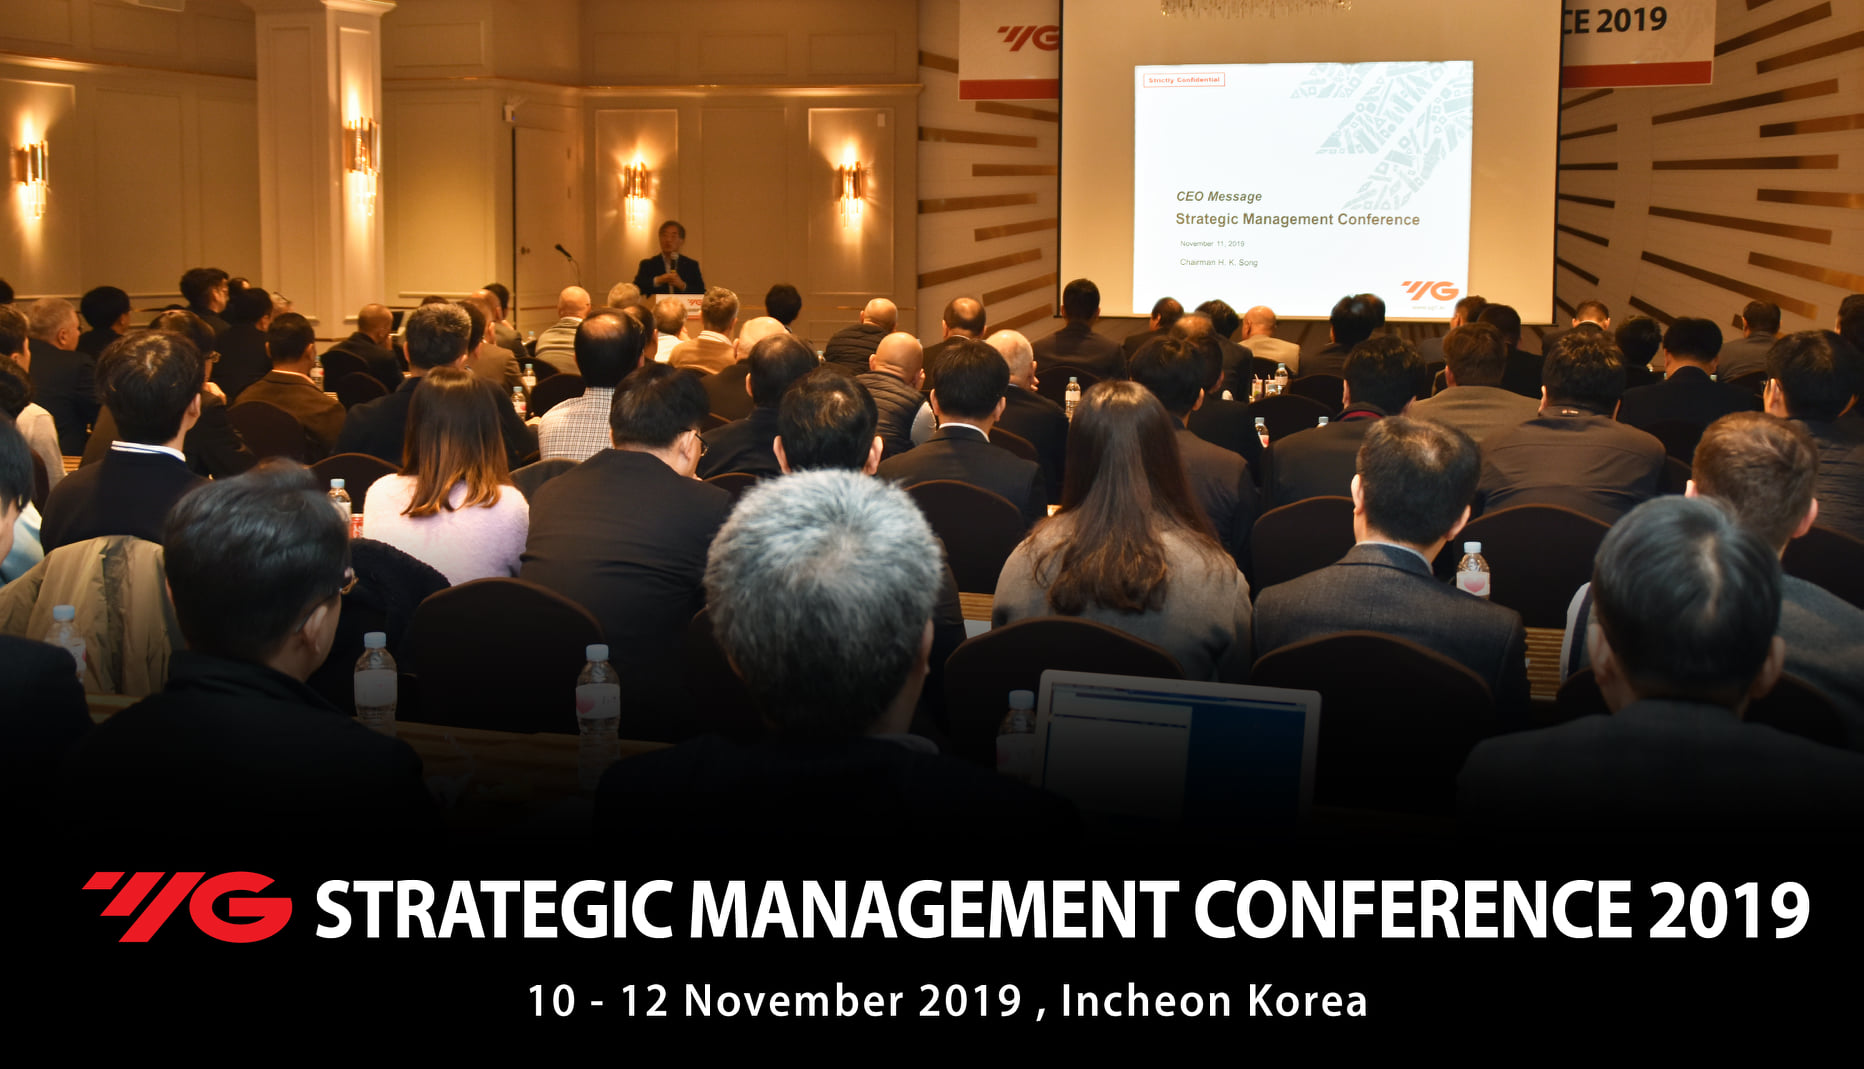 VHG TECH tham dự hội thảo chiến lược phát triển thị trường tại Hàn Quốc